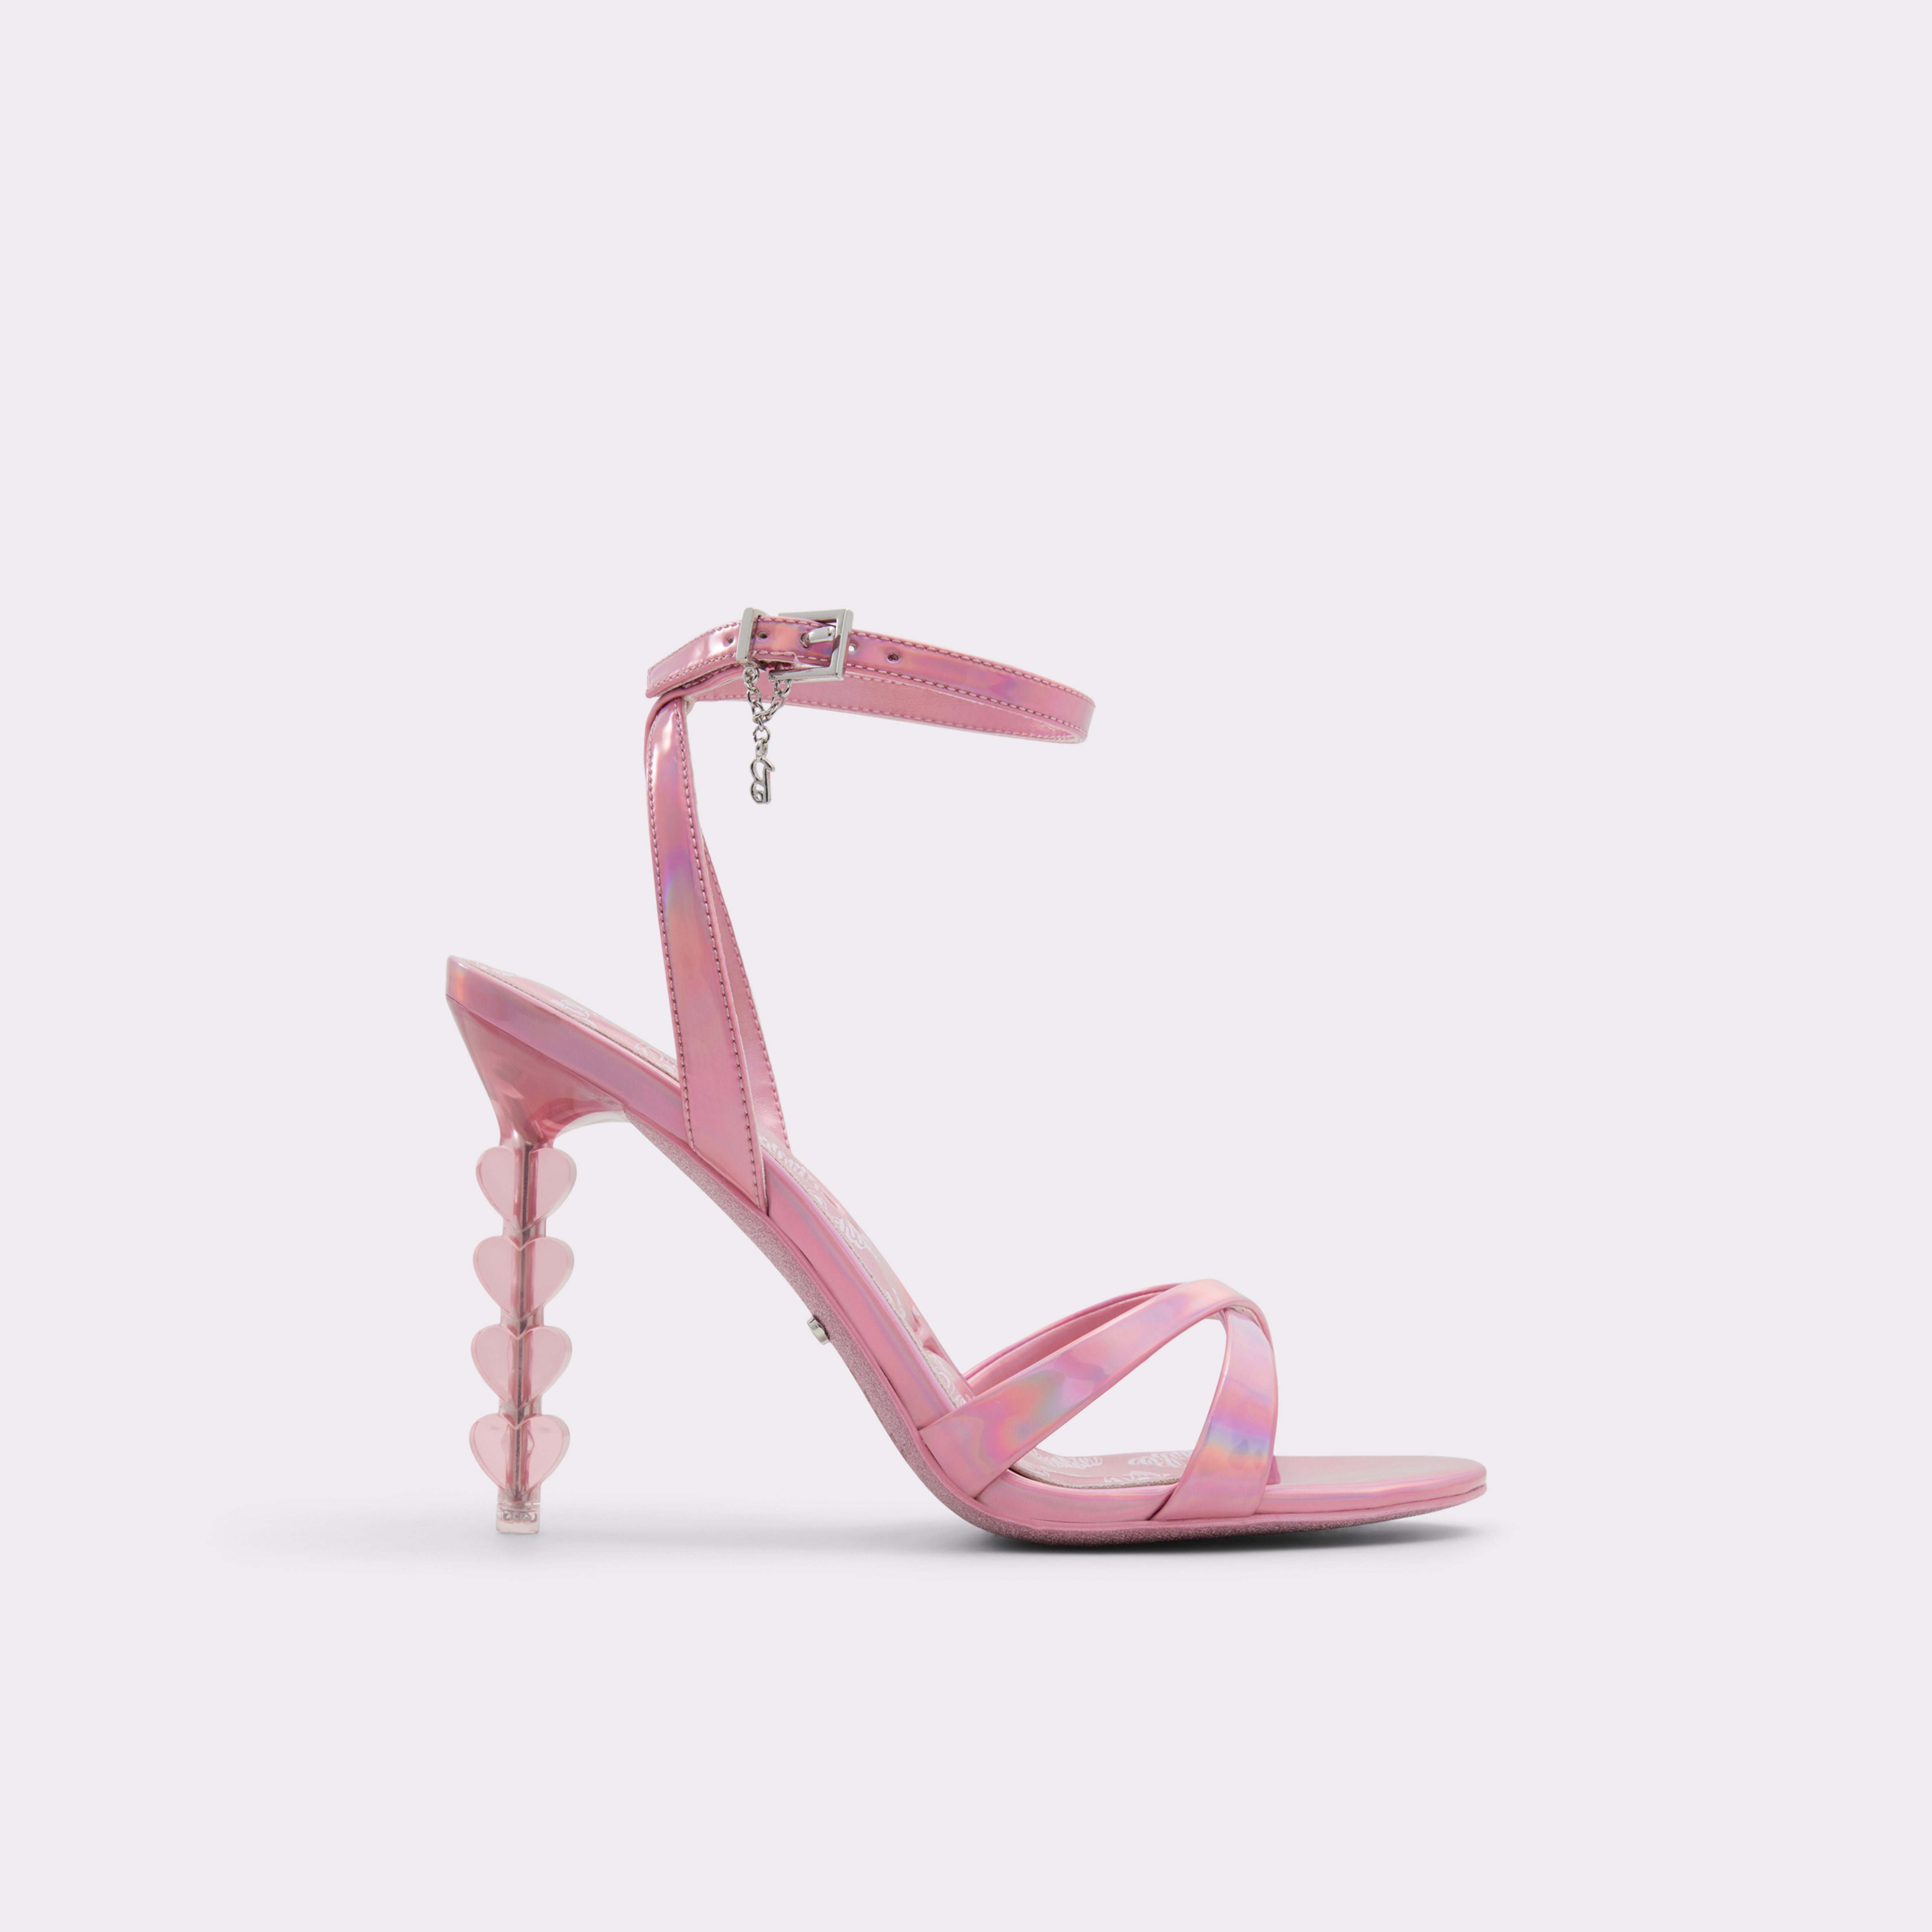 Barbie™ x ALDO Collection | Women's Barbie Shoes, Handbags ...